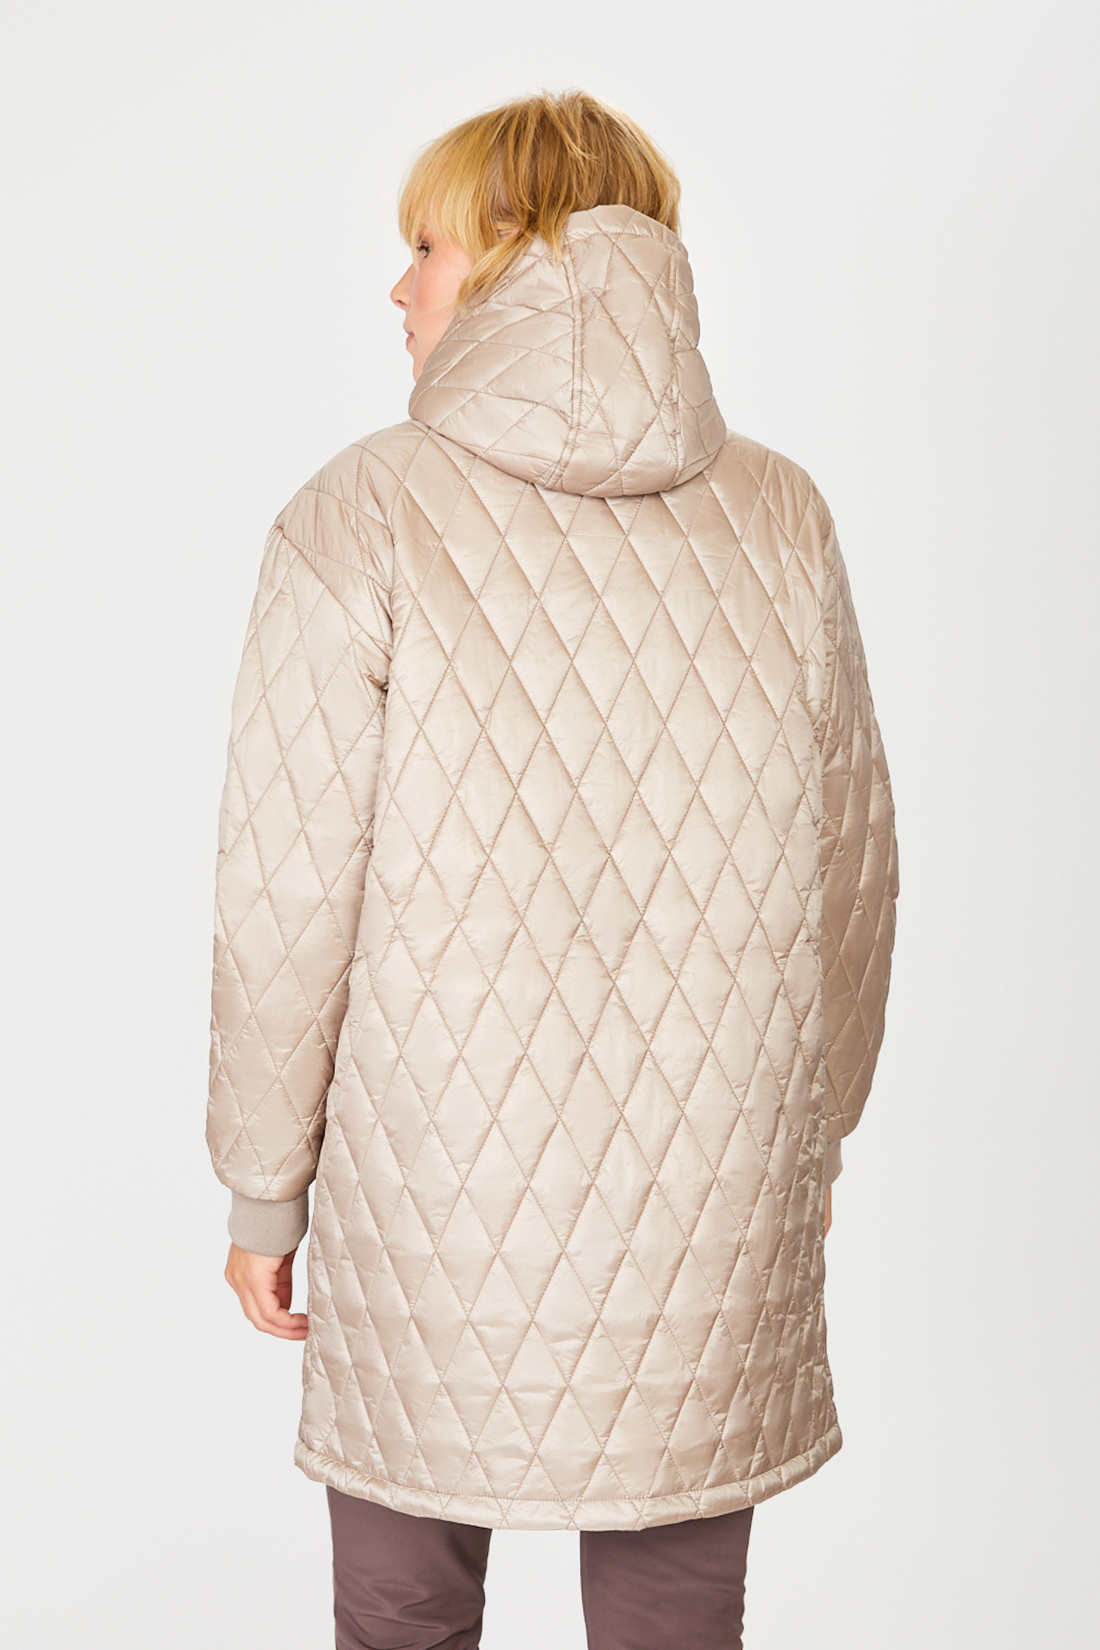 Куртка (арт. baon B031520), размер M, цвет бежевый Куртка (арт. baon B031520) - фото 2